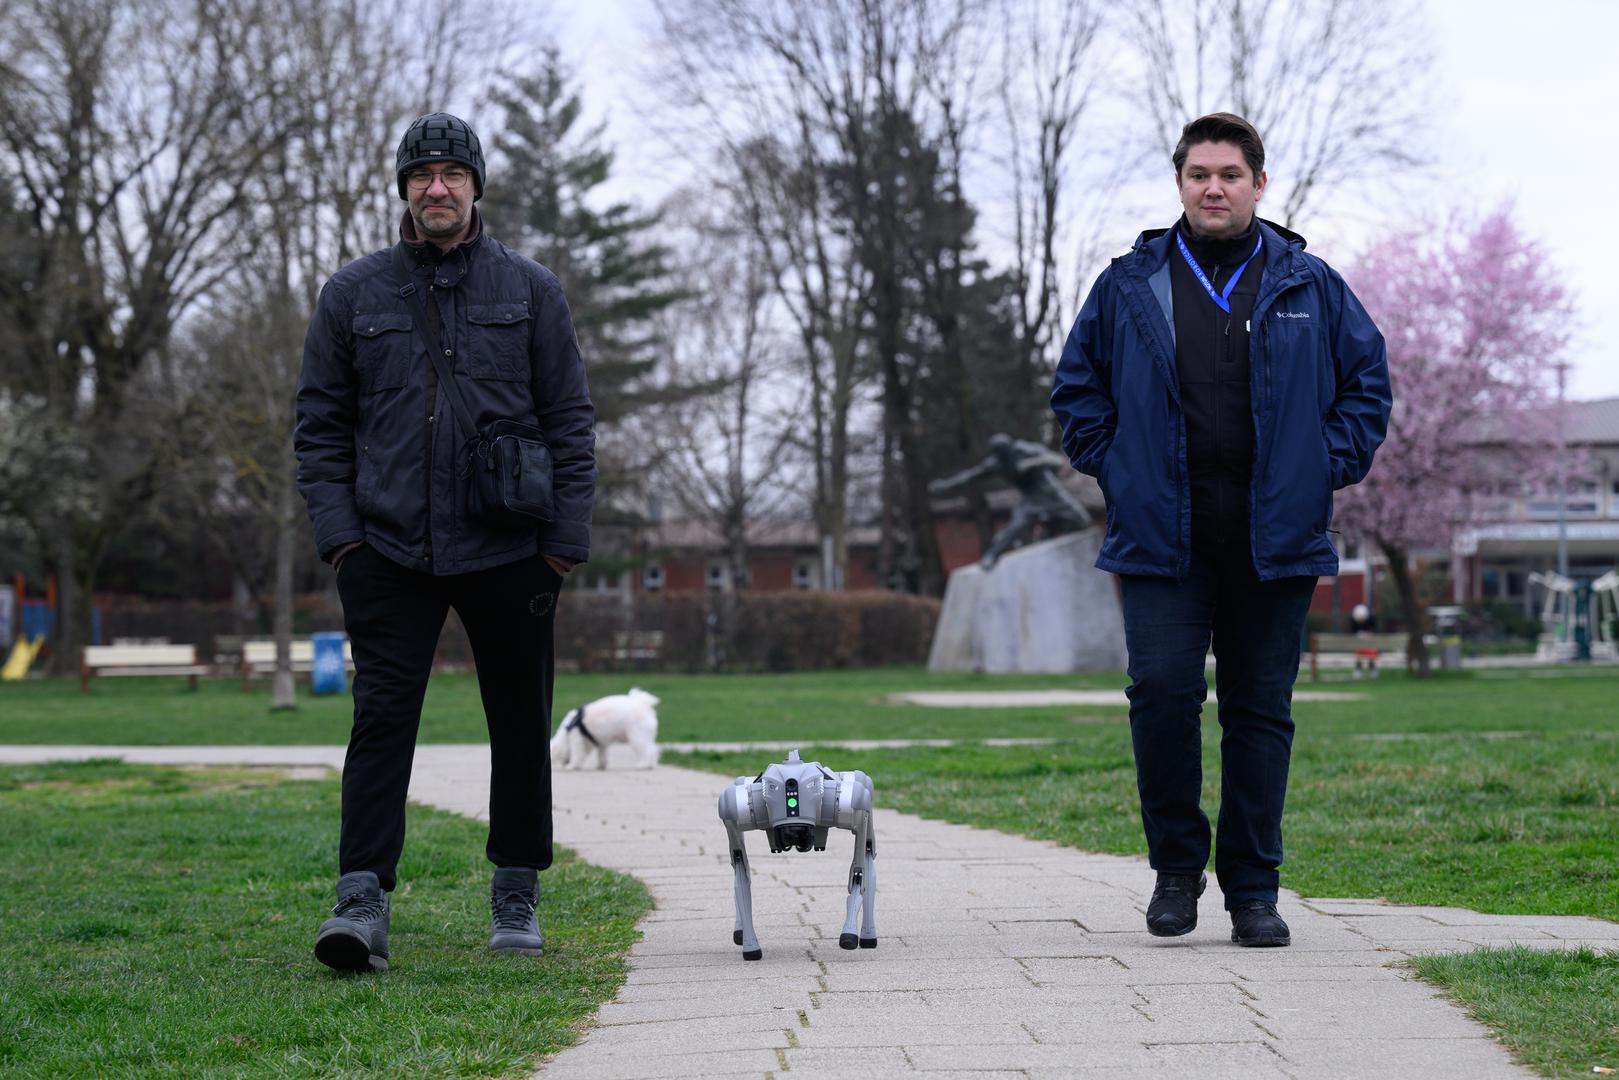 07.03.2024., Velika Gorica -  Milan Rajcevic, vlasnik i direktor tvrtke Notum Robotics sa suradnikom Ivanom Batinicem prosetao je Parkom dr. Franje Tudjmana u velikoj Gorici u drustvu robota psa. Za robota su podjednako bili zainteresirani prolaznici i njihovi ljubimci psi. Robot pas je komercijalni proizvod koji se radi po narudjbi, a ono sto je kod njega interesantno i unikatno su softverska rijesenja. Poanta je da ta platforma bude autonomna, bez ljudske intervencije i sa minimalnim odrzavanjem izvrsava zadatke prema svojem programu, da se snalazi u nepoznatim okolnostima, po nepoznatom terenu. Primjene su neogranicene, od sigurnosnih primjena, sluzbe spasavanja, nadzora te interakcije i edukacije. Puni se do 24 sata zbog tehnologije baterije i moze raditi do 3 sata, a trcati moze brzinom do 20 km/h. Trenutno nije vodootporan ali s vremenom moze postati i vodootporan i vatrootporan za siri spektar primjena. Ivan Batinic, Milan Rajcevic.
 Photo: Davor Puklavec/PIXSELL